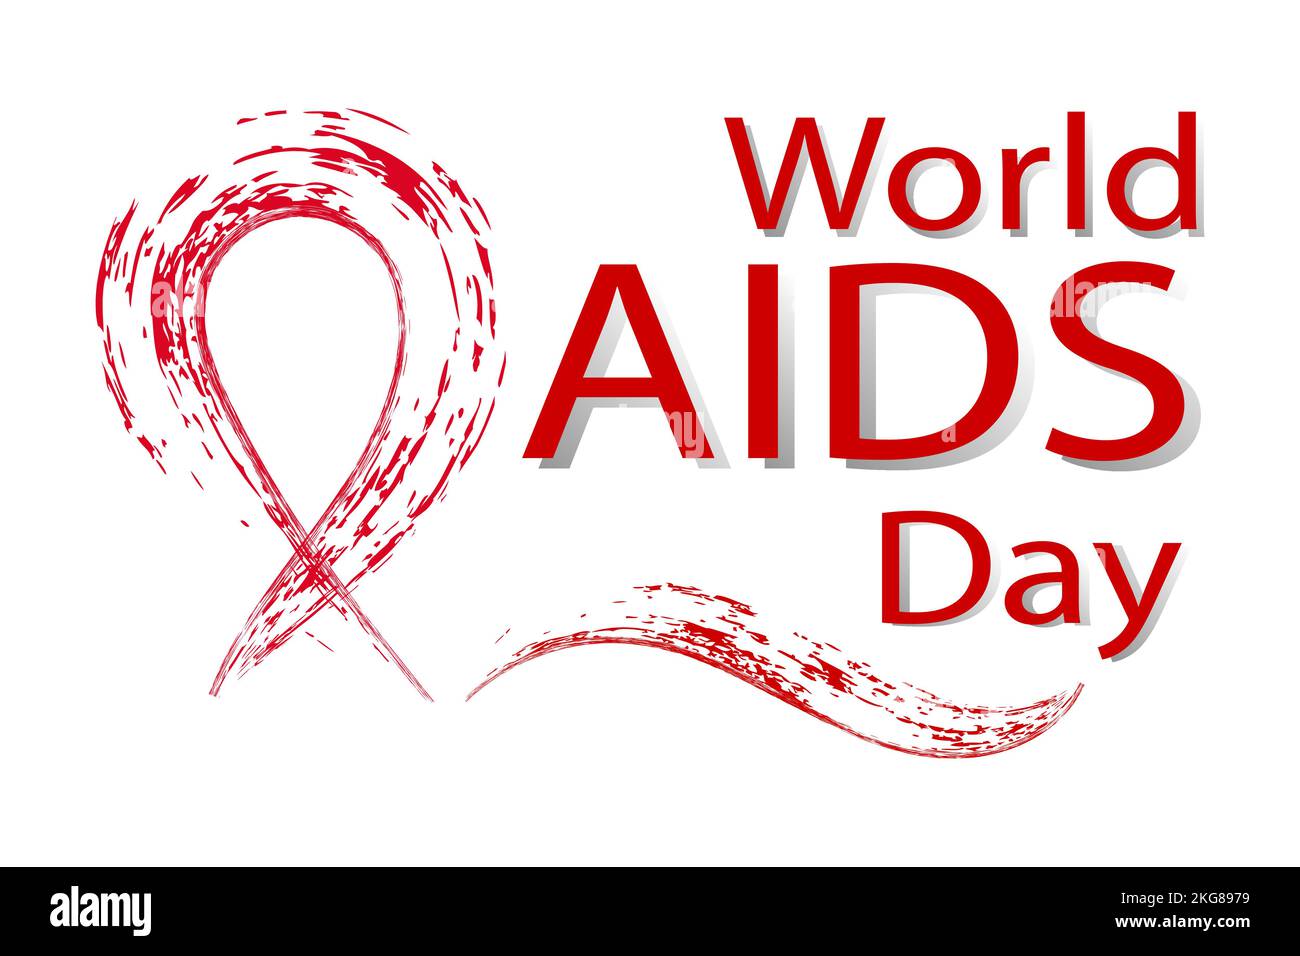 Rotes Band und Aufschrift Welt AIDS Tag im Grunge-Stil auf weißem Hintergrund. Vektorbild. Stock Vektor